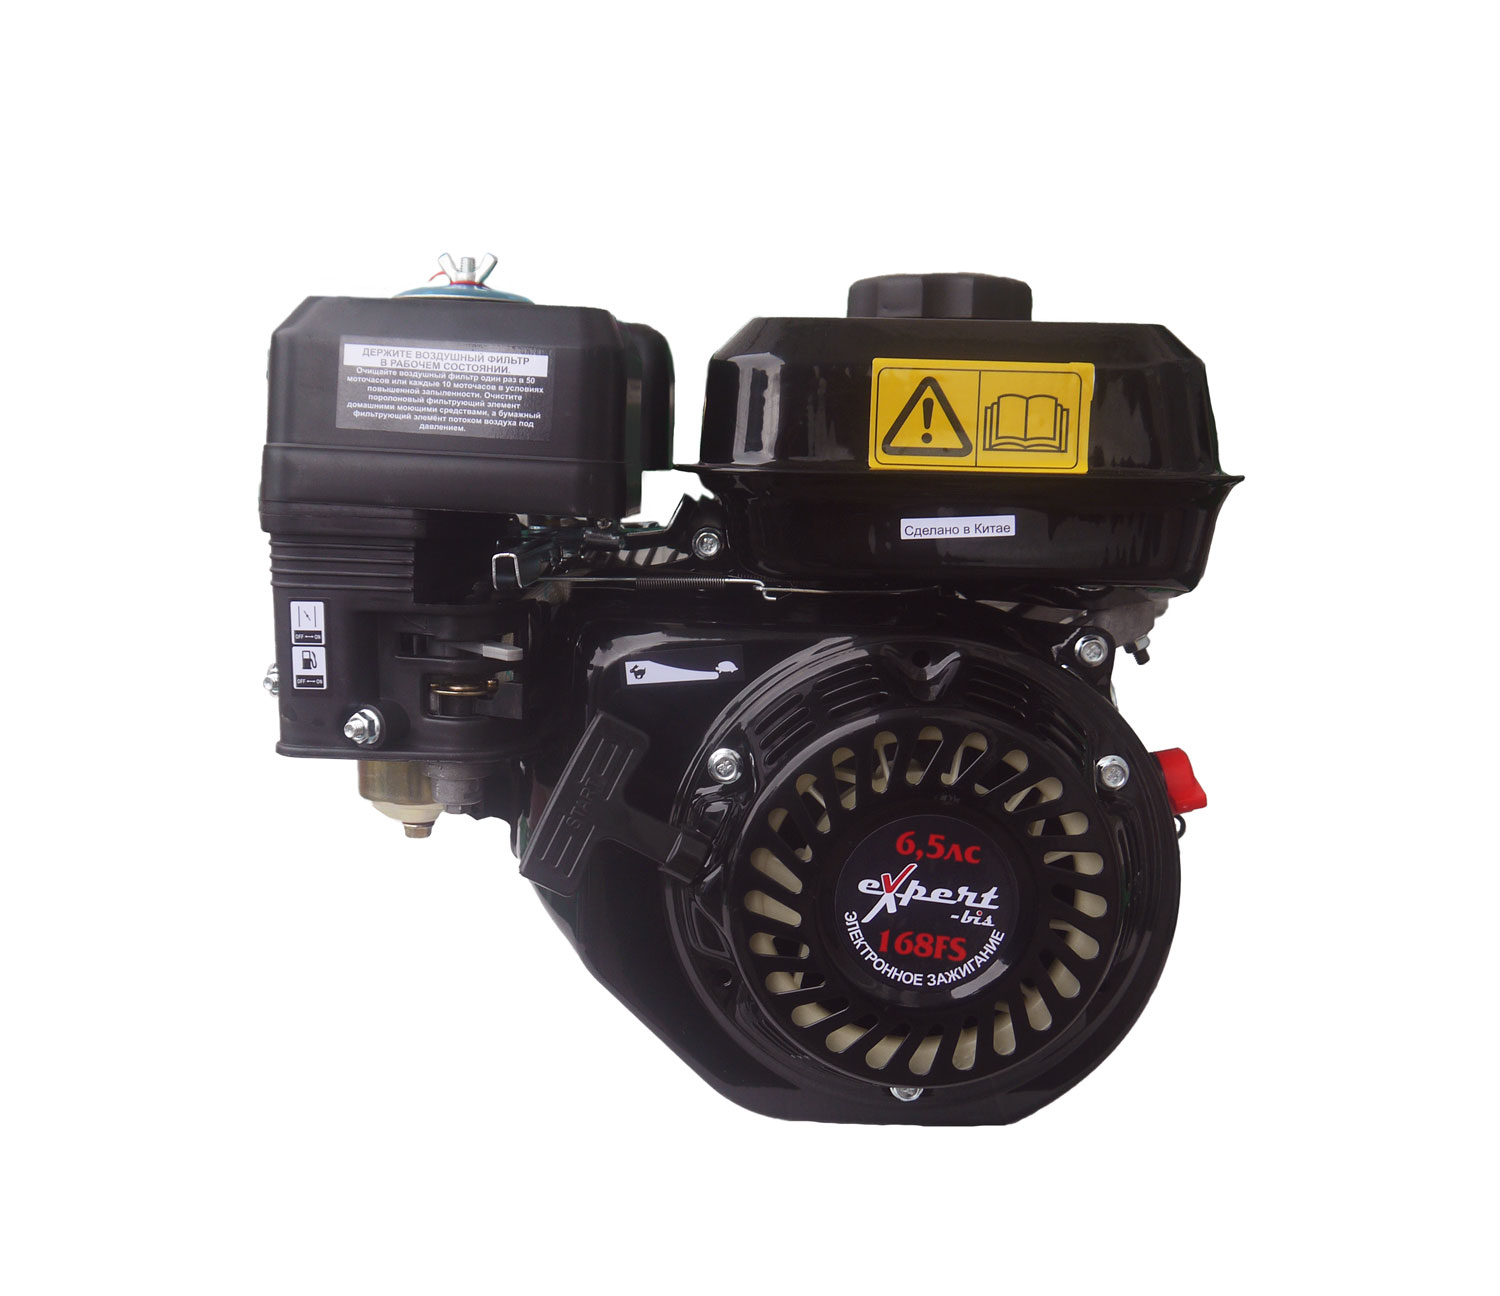 средство для остановки течи моторного масла pro tec Двигатель expert-bis 168FS - 6,5 л/с